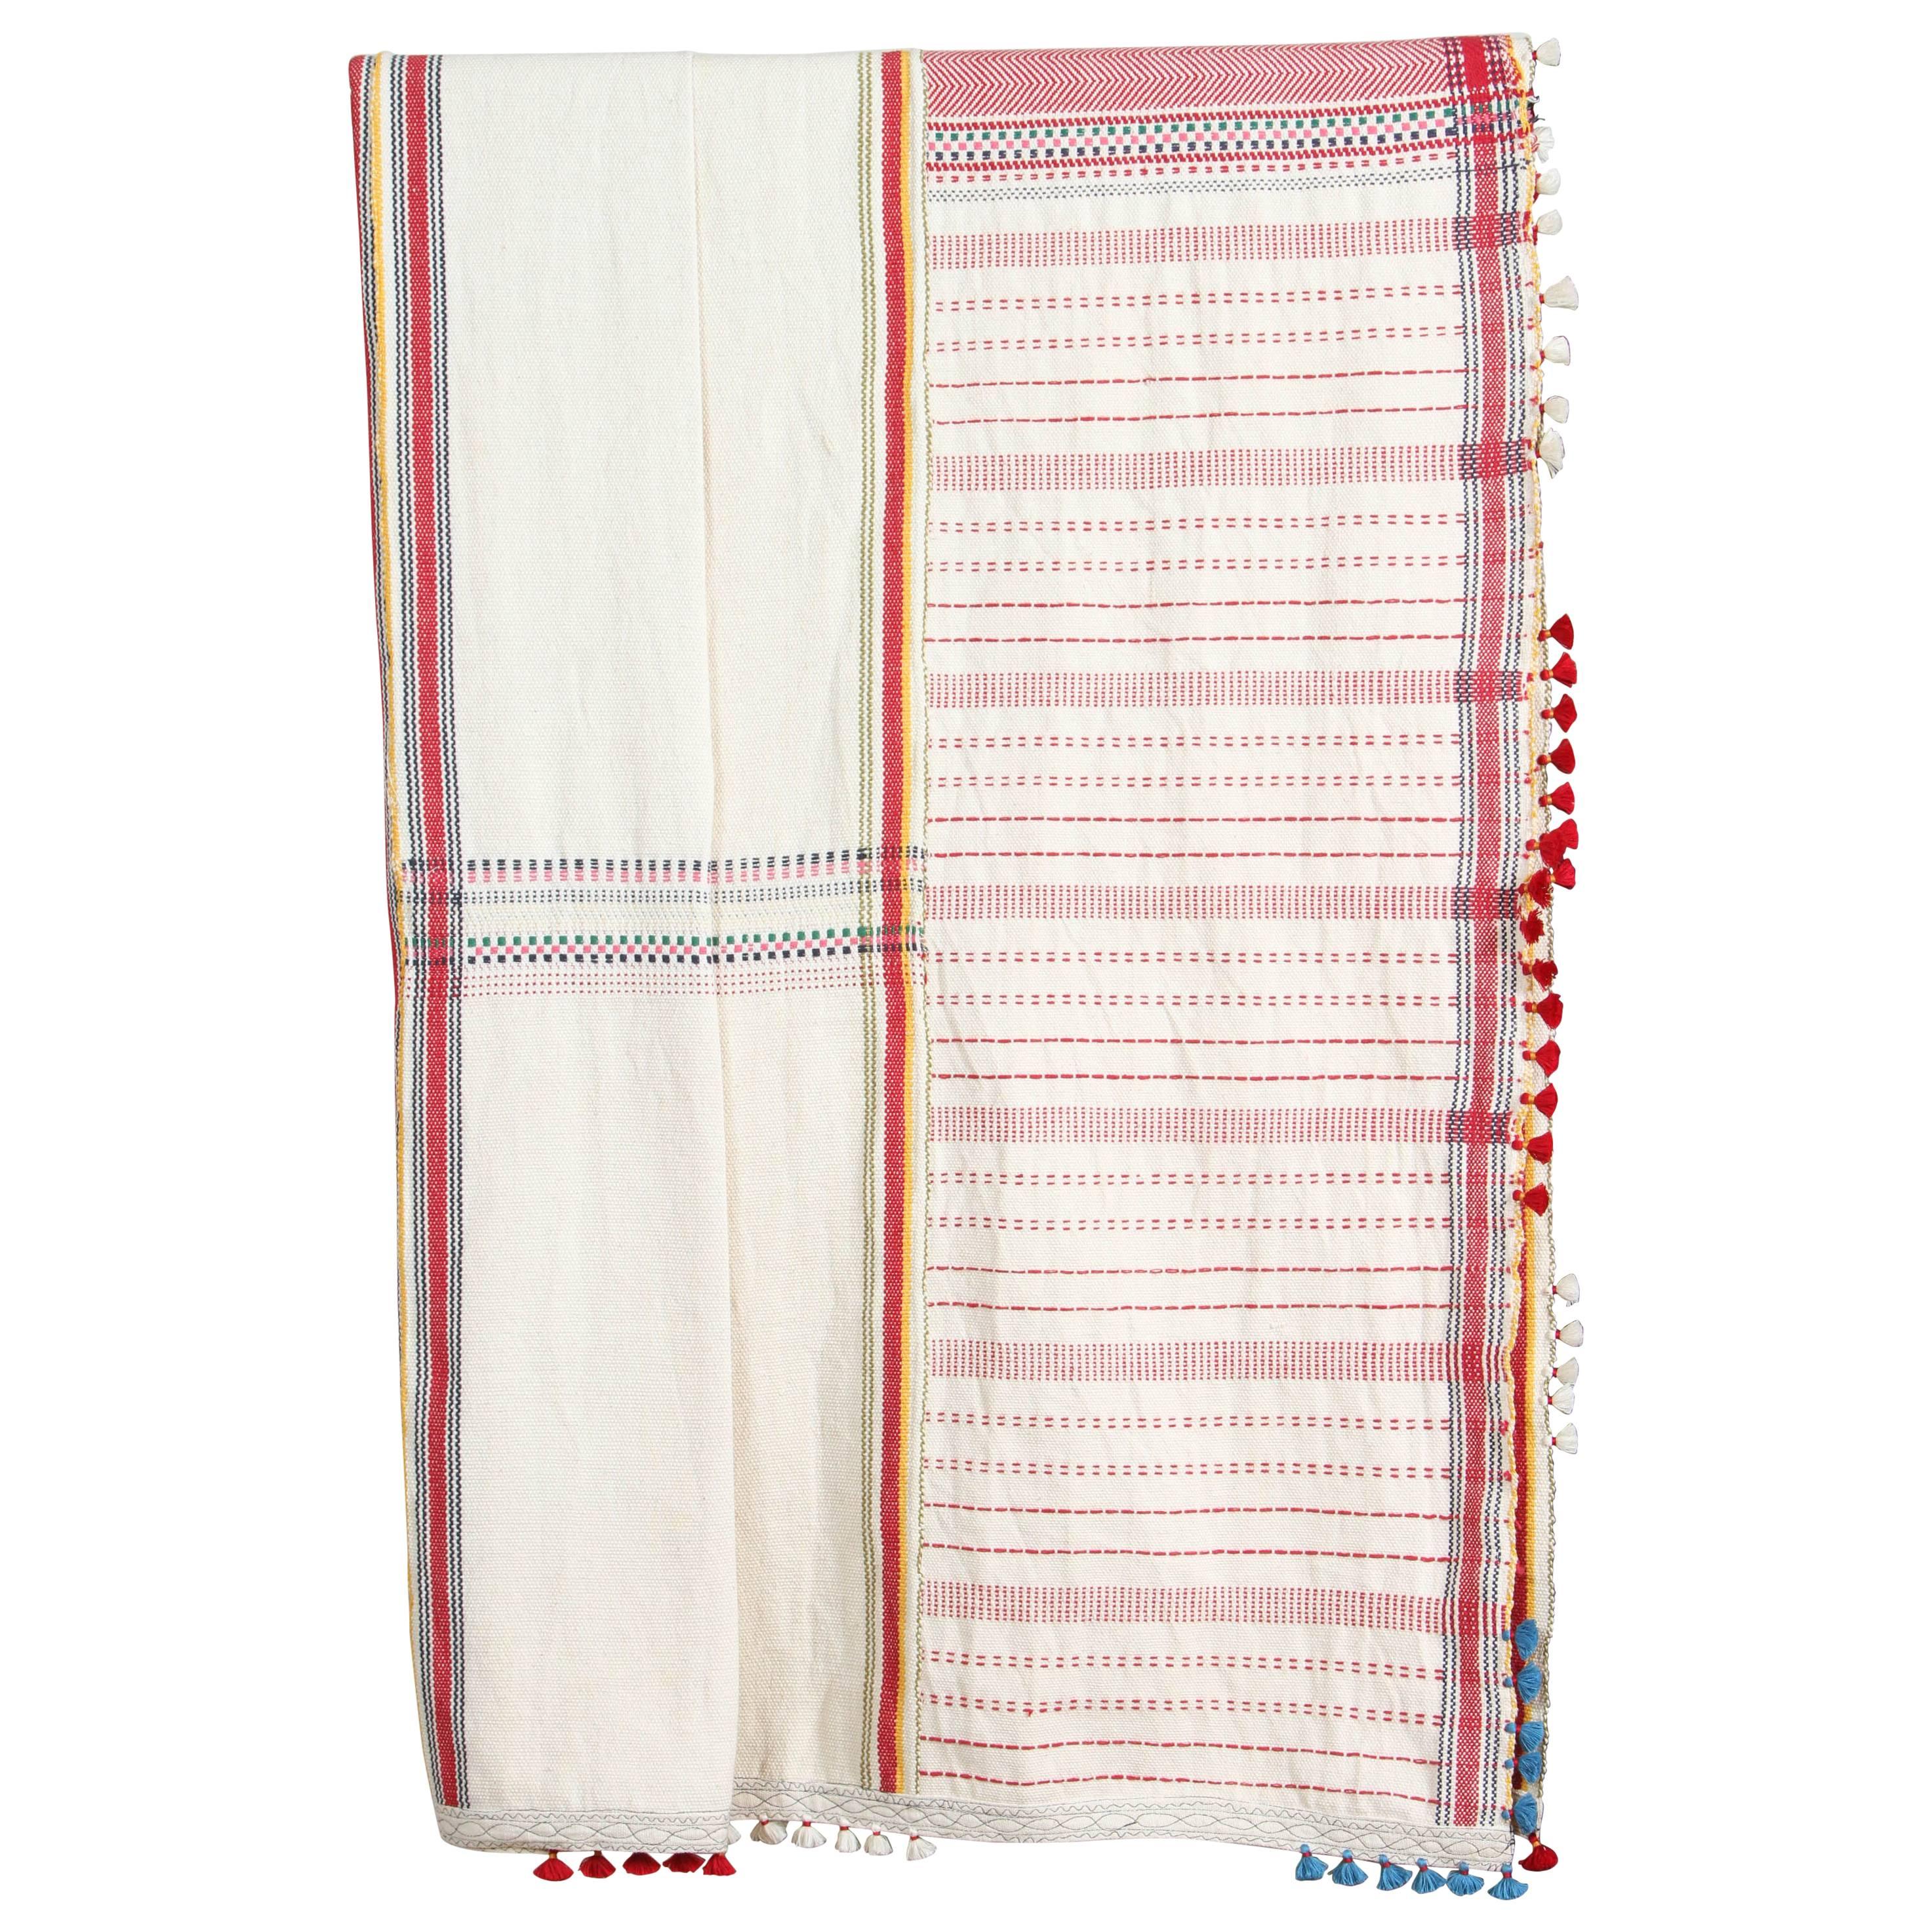 Injiri "Real India" Organic Cotton Bedcover or Throw. 